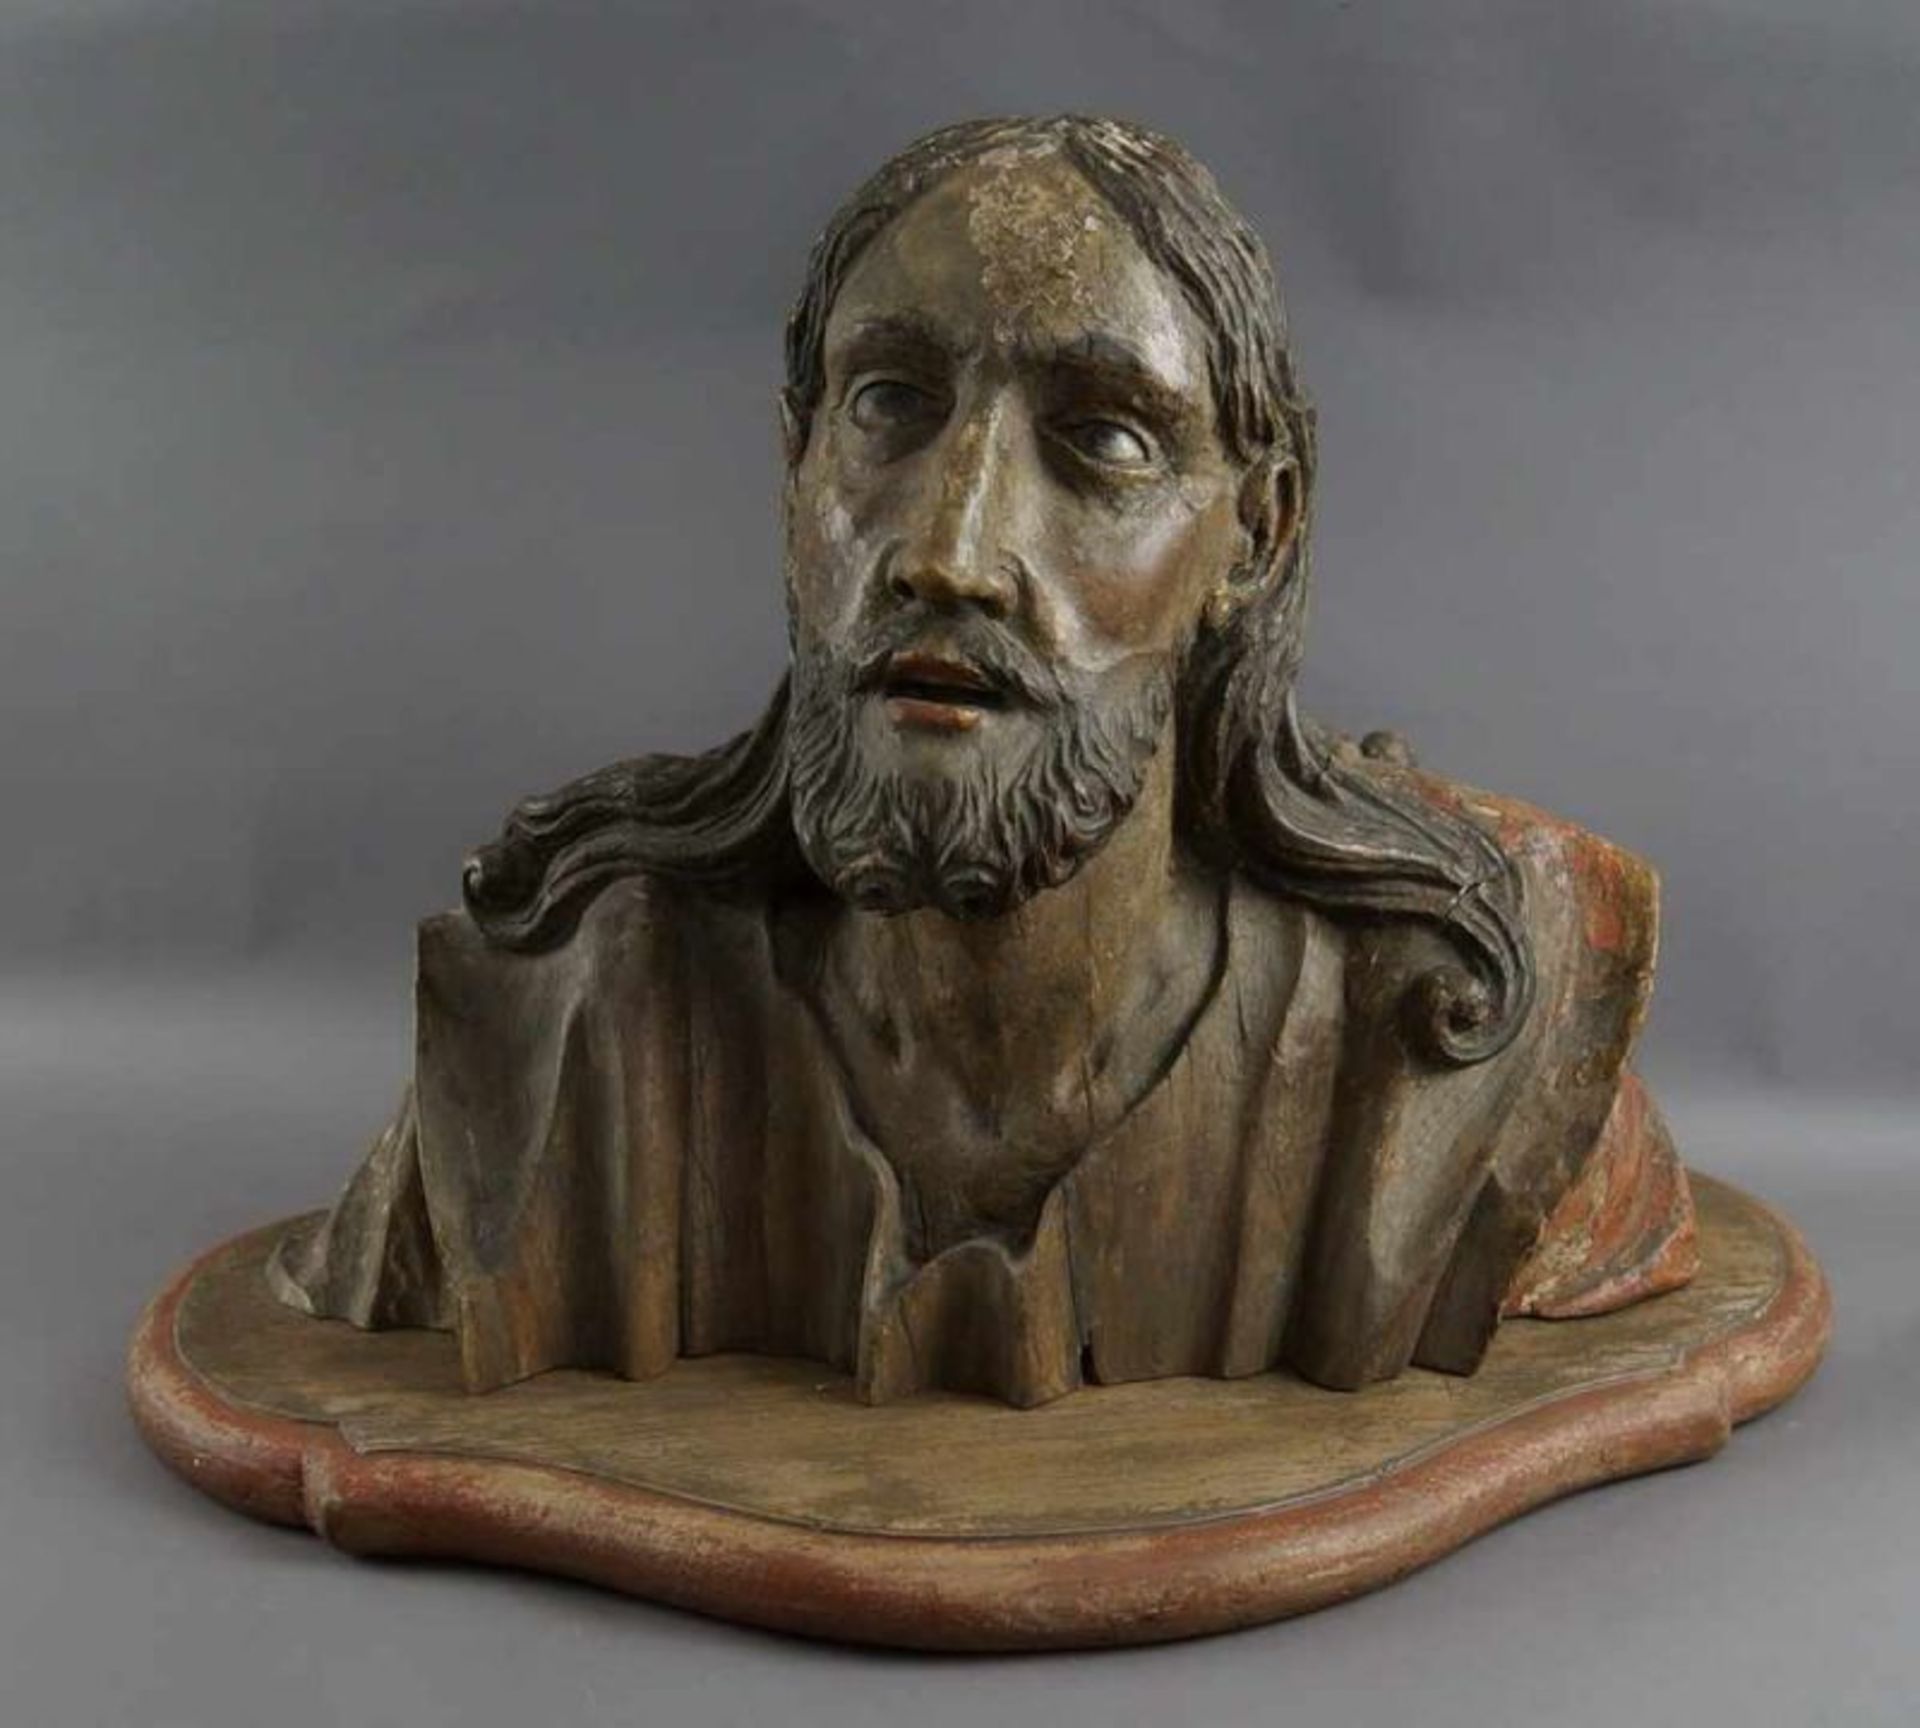 Gotische Büste des Jesus Christus, Holz geschnitz und gefasst, 16. JH, 47x65x35cm 20.17 % buyer's